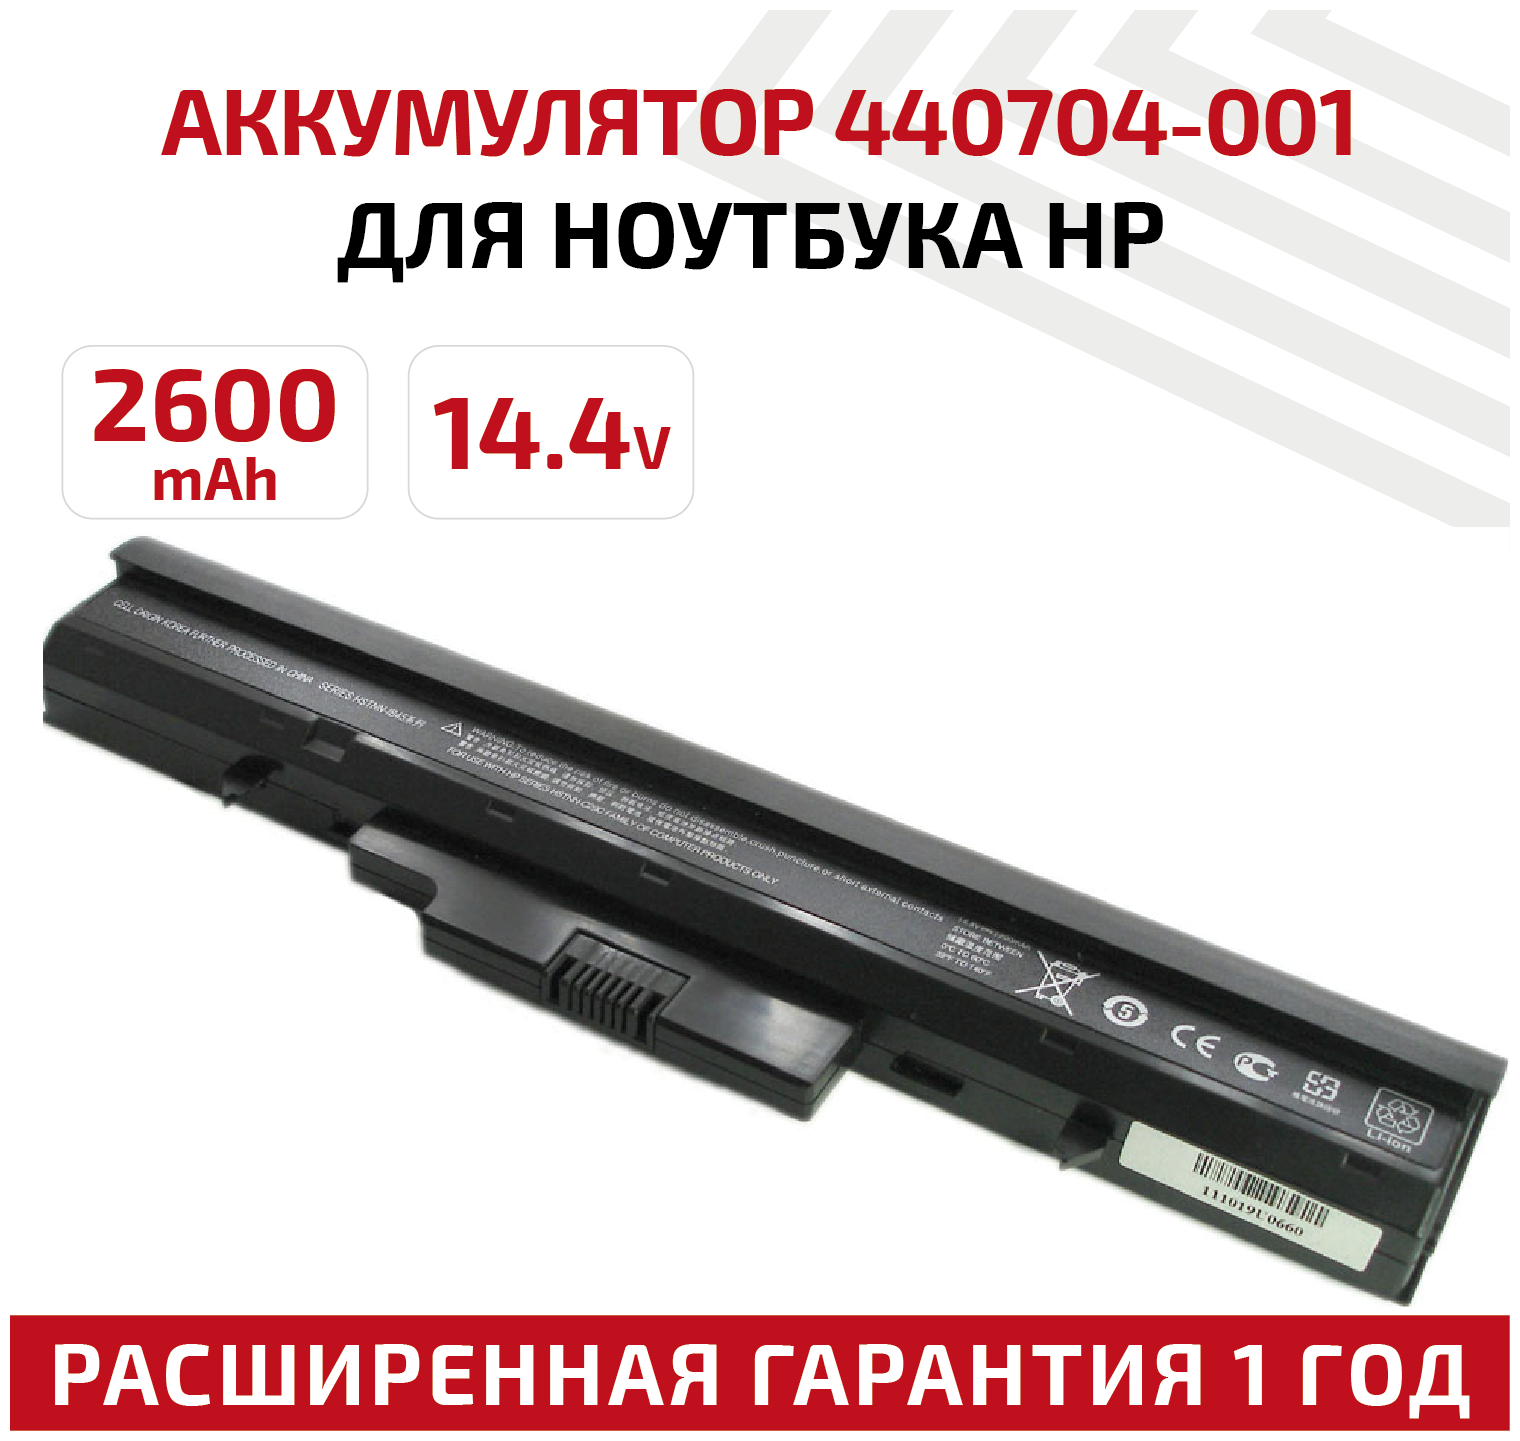 Аккумулятор (АКБ аккумуляторная батарея) HSTNN-C29C для ноутбука HP Compaq 510 530 14.4В 2600мАч черная